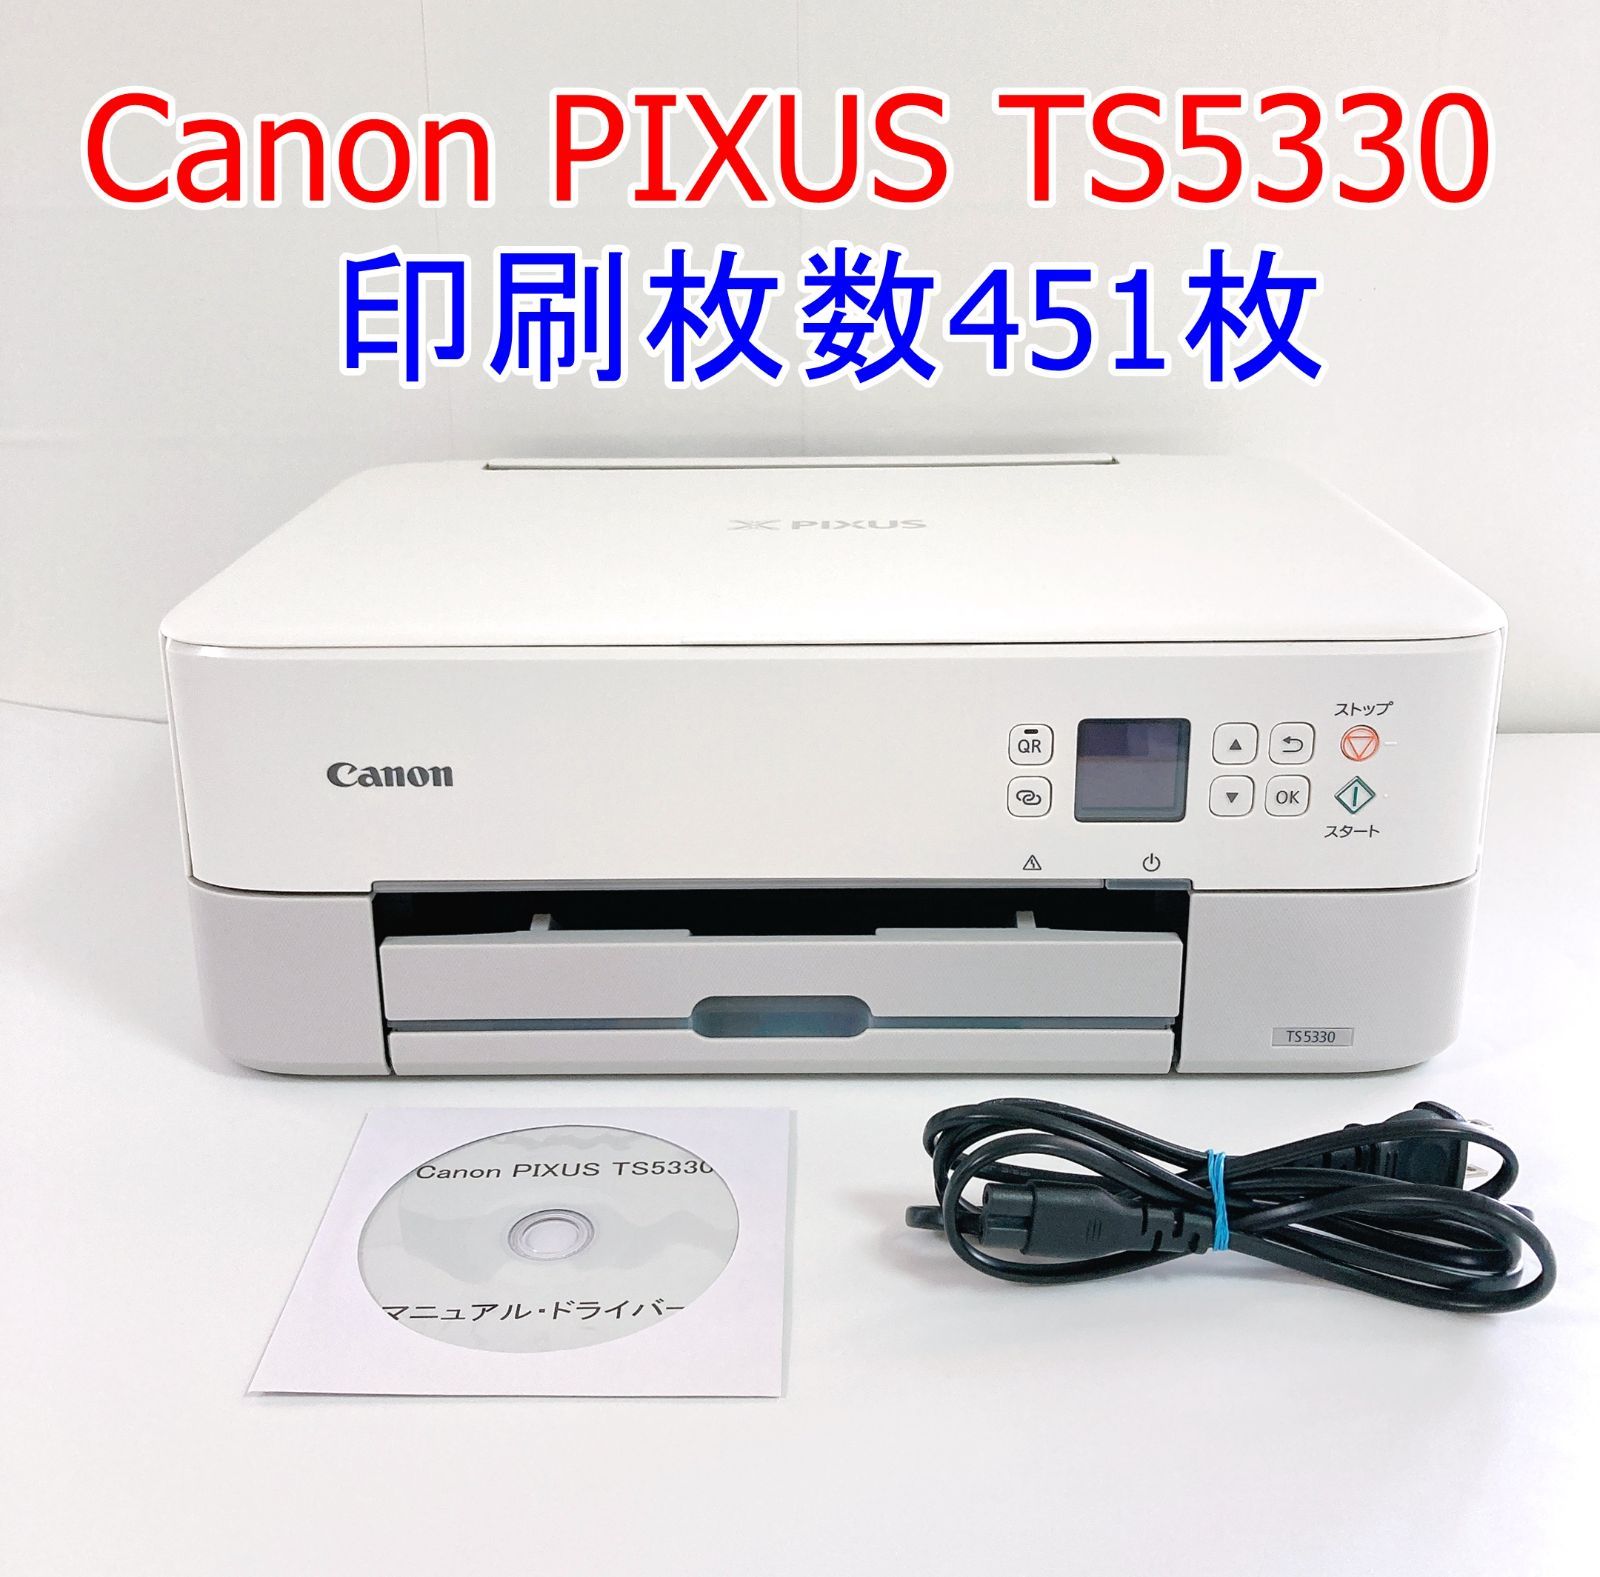 PIXUS TS5330 インクジェットプリンター Canon - プリンター